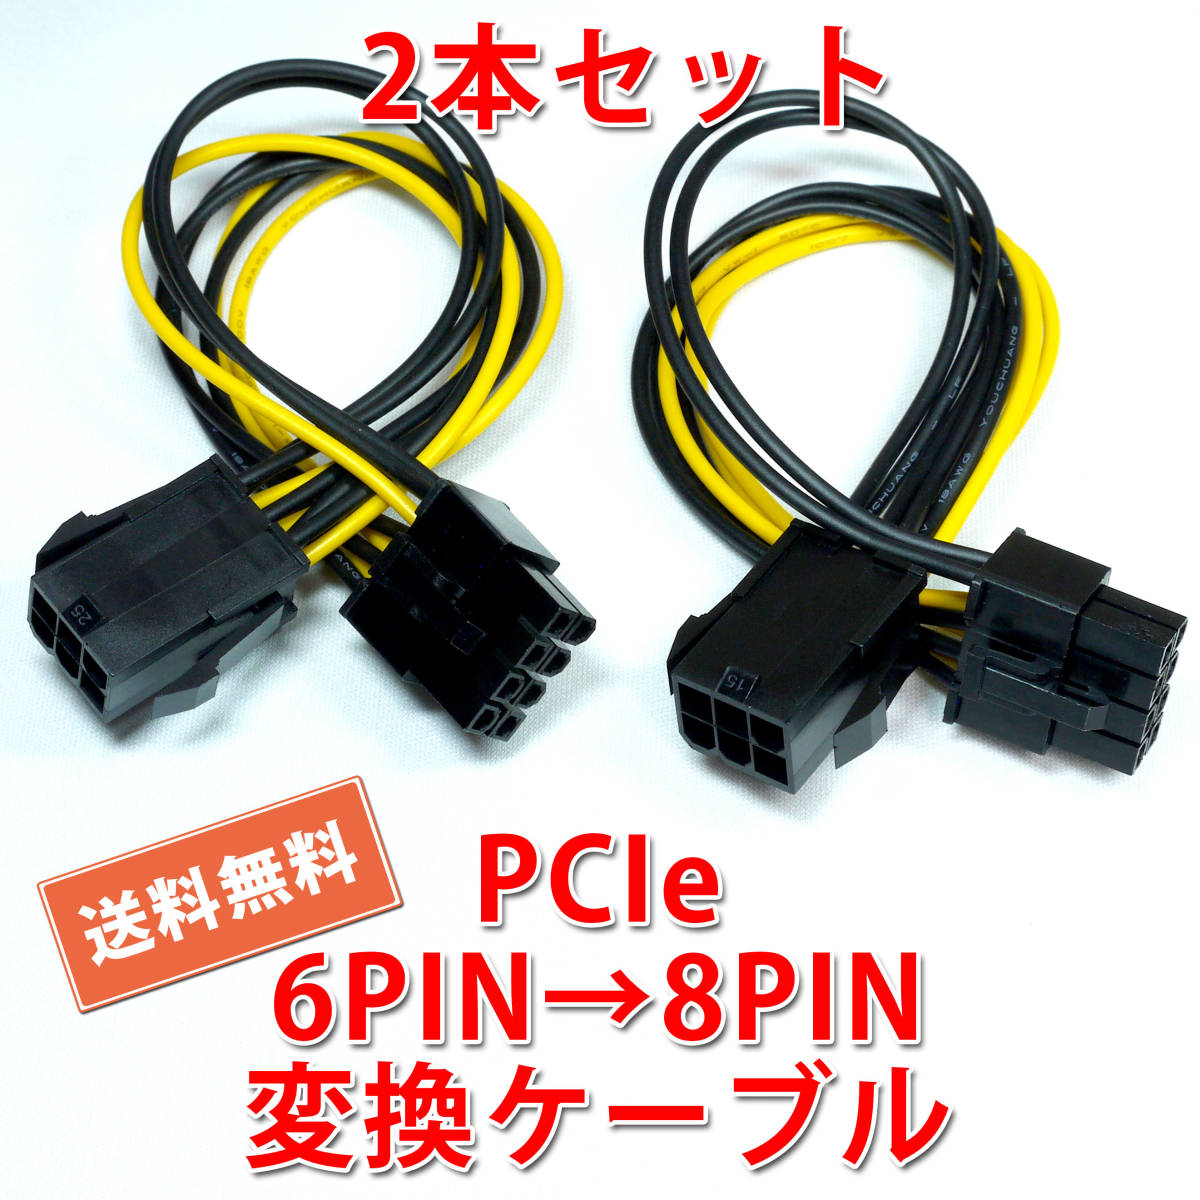 送料無料【2本セット/新品】PCI Express 電源変換ケーブル 6PIN(メス) → 8PIN(オス) 長さ約15.5cm 追跡可能ネコポス/ゆうパケット発送の画像1